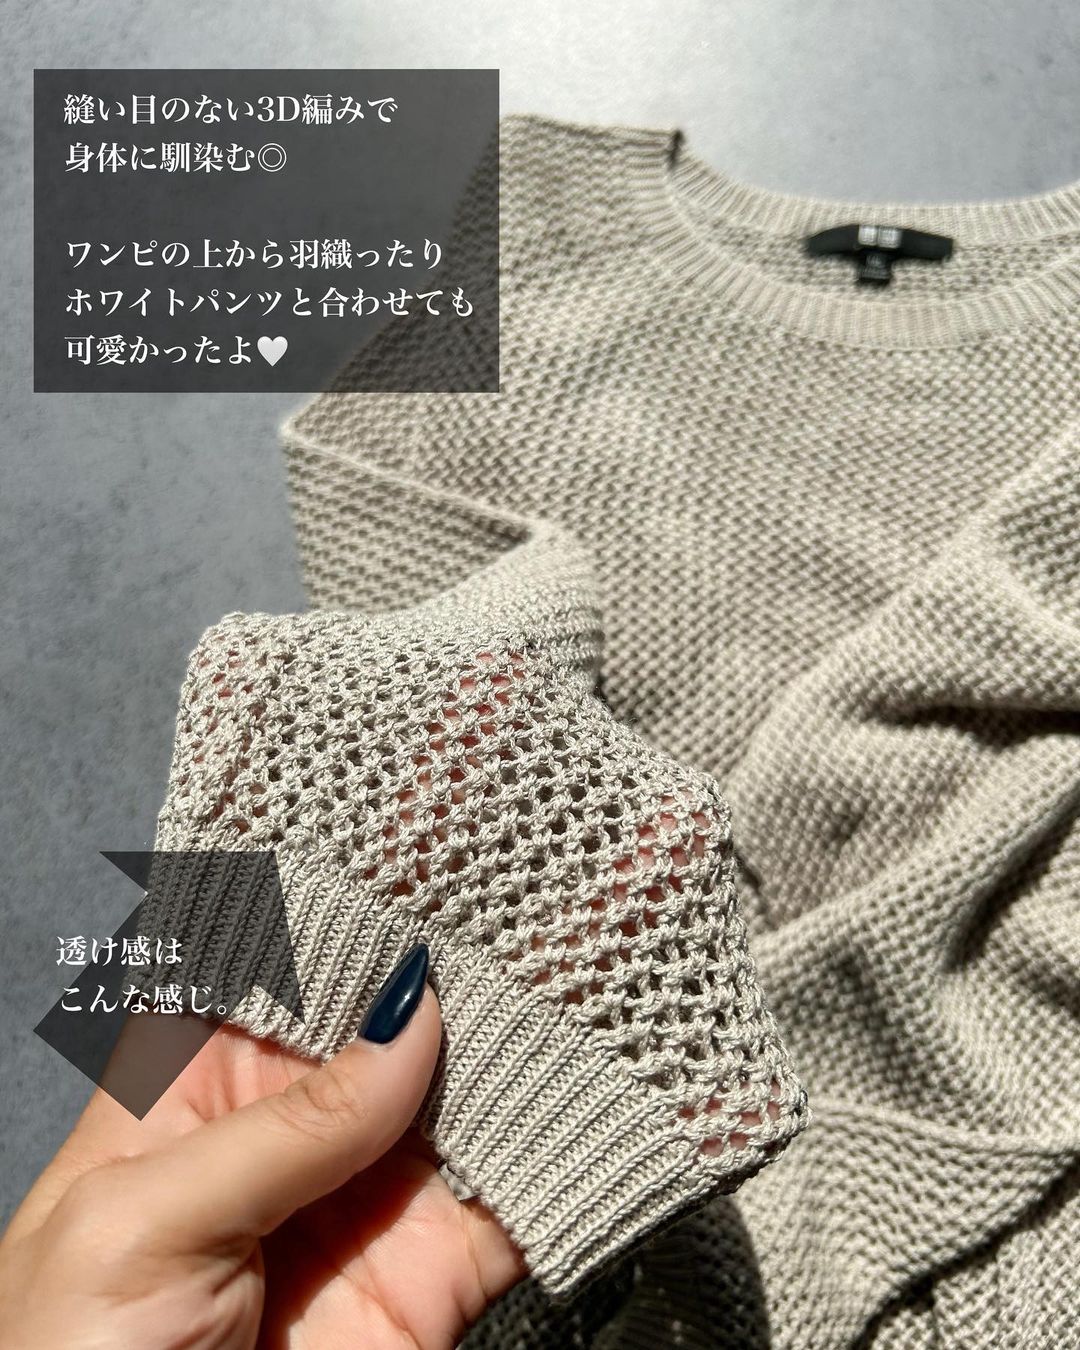 ユニクロの「3Dメッシュクルーネックセーター」の生地感